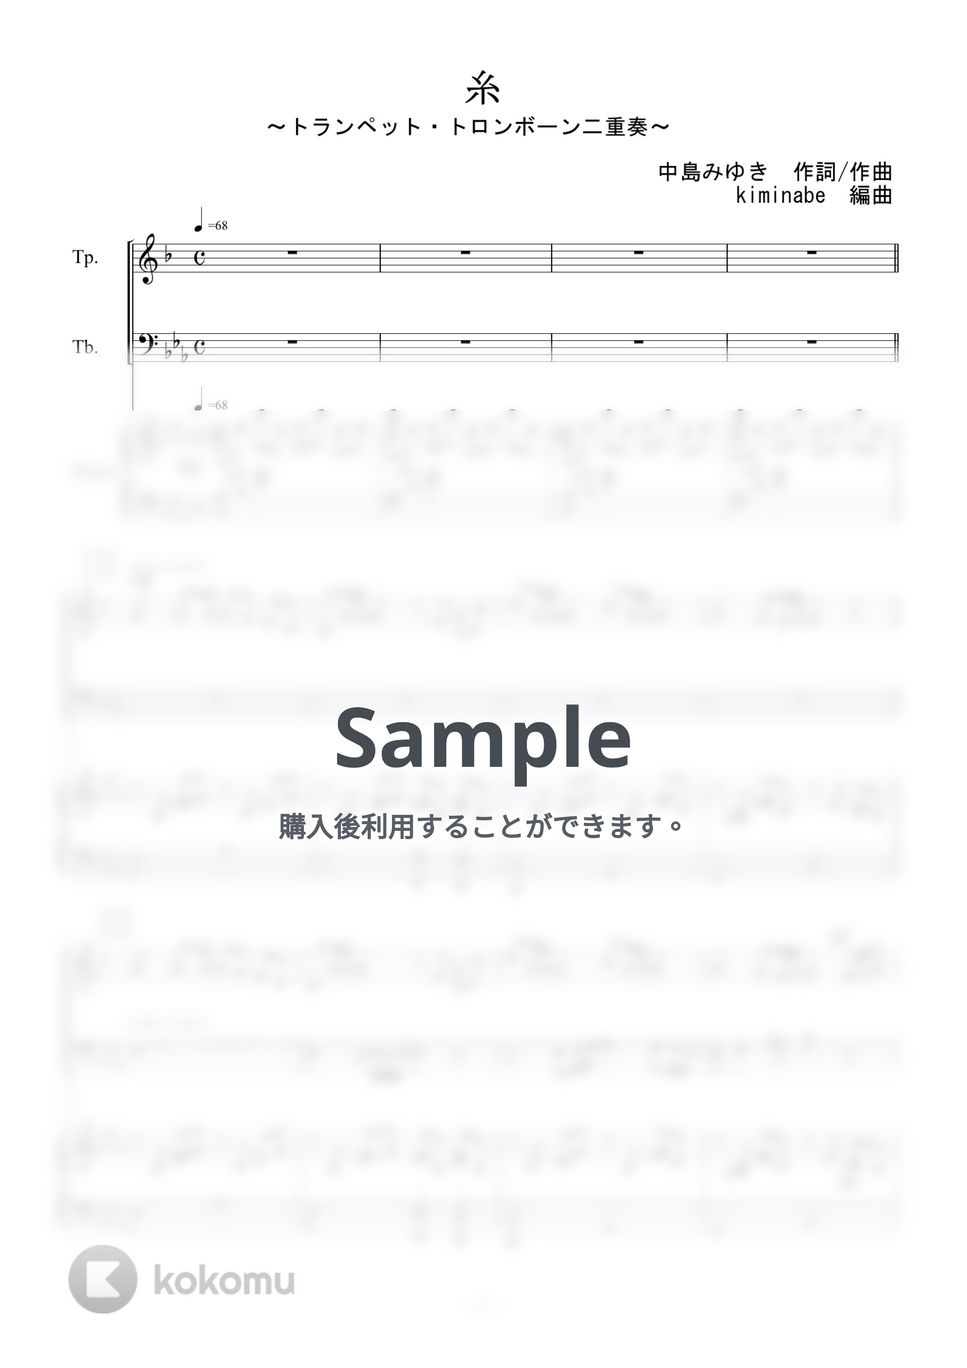 中島みゆき - 糸 (トランペット・トロンボーン二重奏) by kiminabe